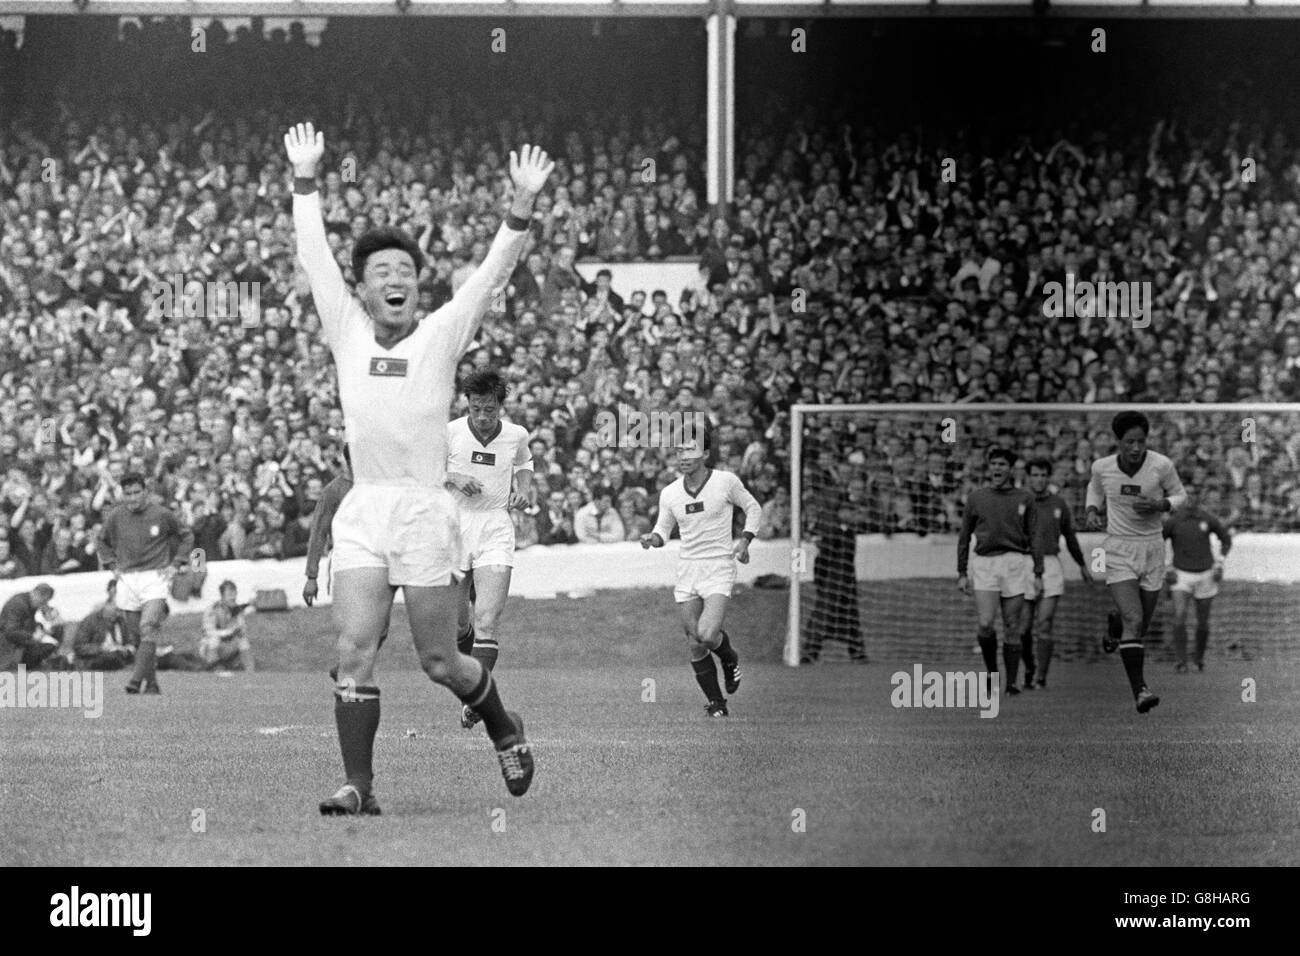 Calcio - Coppa del mondo Inghilterra 1966 - Quarter Final - Portogallo / Corea del Nord - Goodison Park. Un giocatore della Corea del Nord festeggia dopo che il suo lato ha segnato il suo secondo gol per andare 2-0 in su Foto Stock